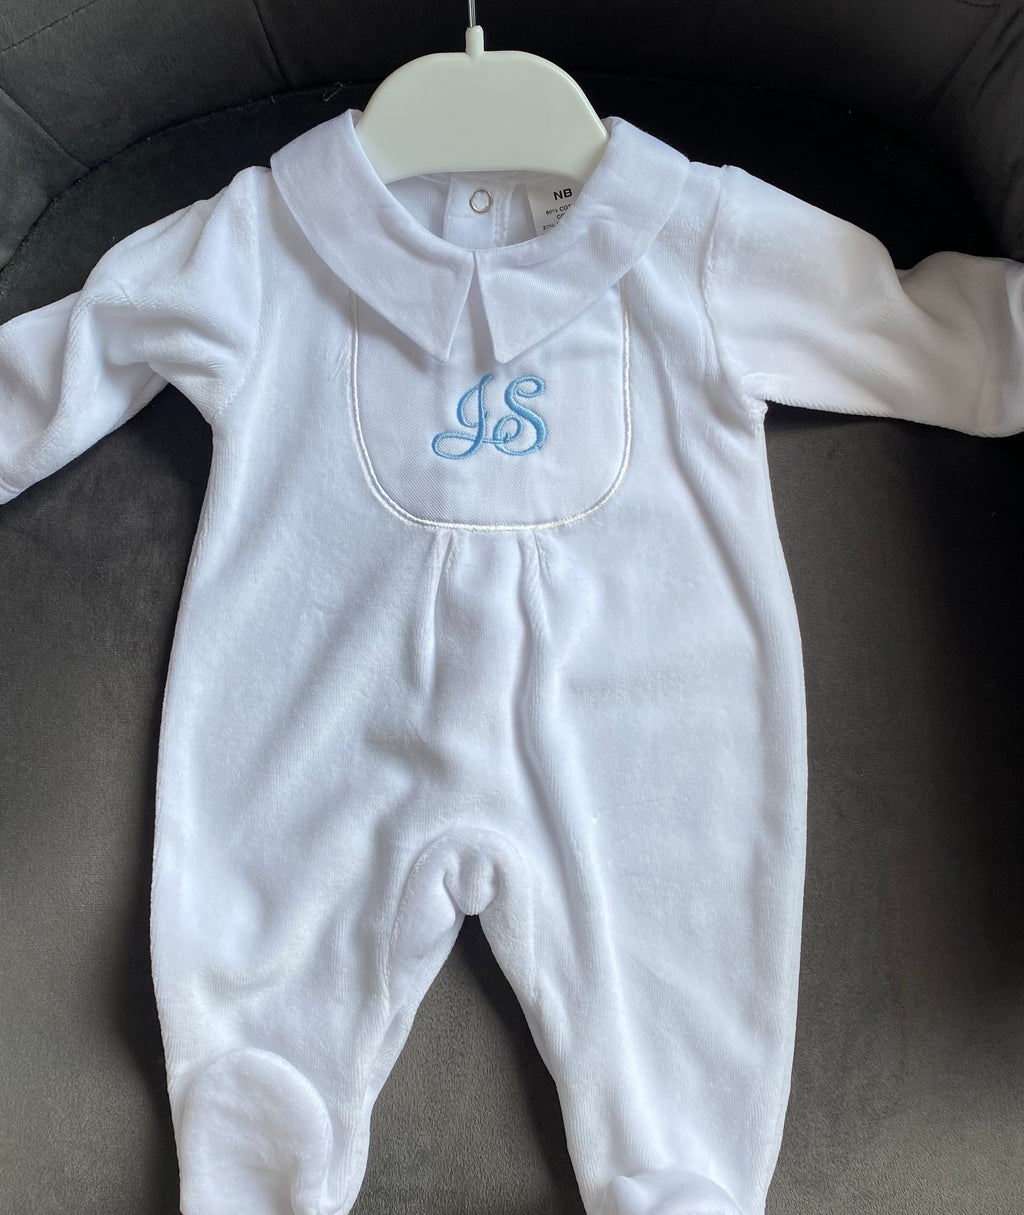 White Velour Babygrow with Initials JS - Newborn